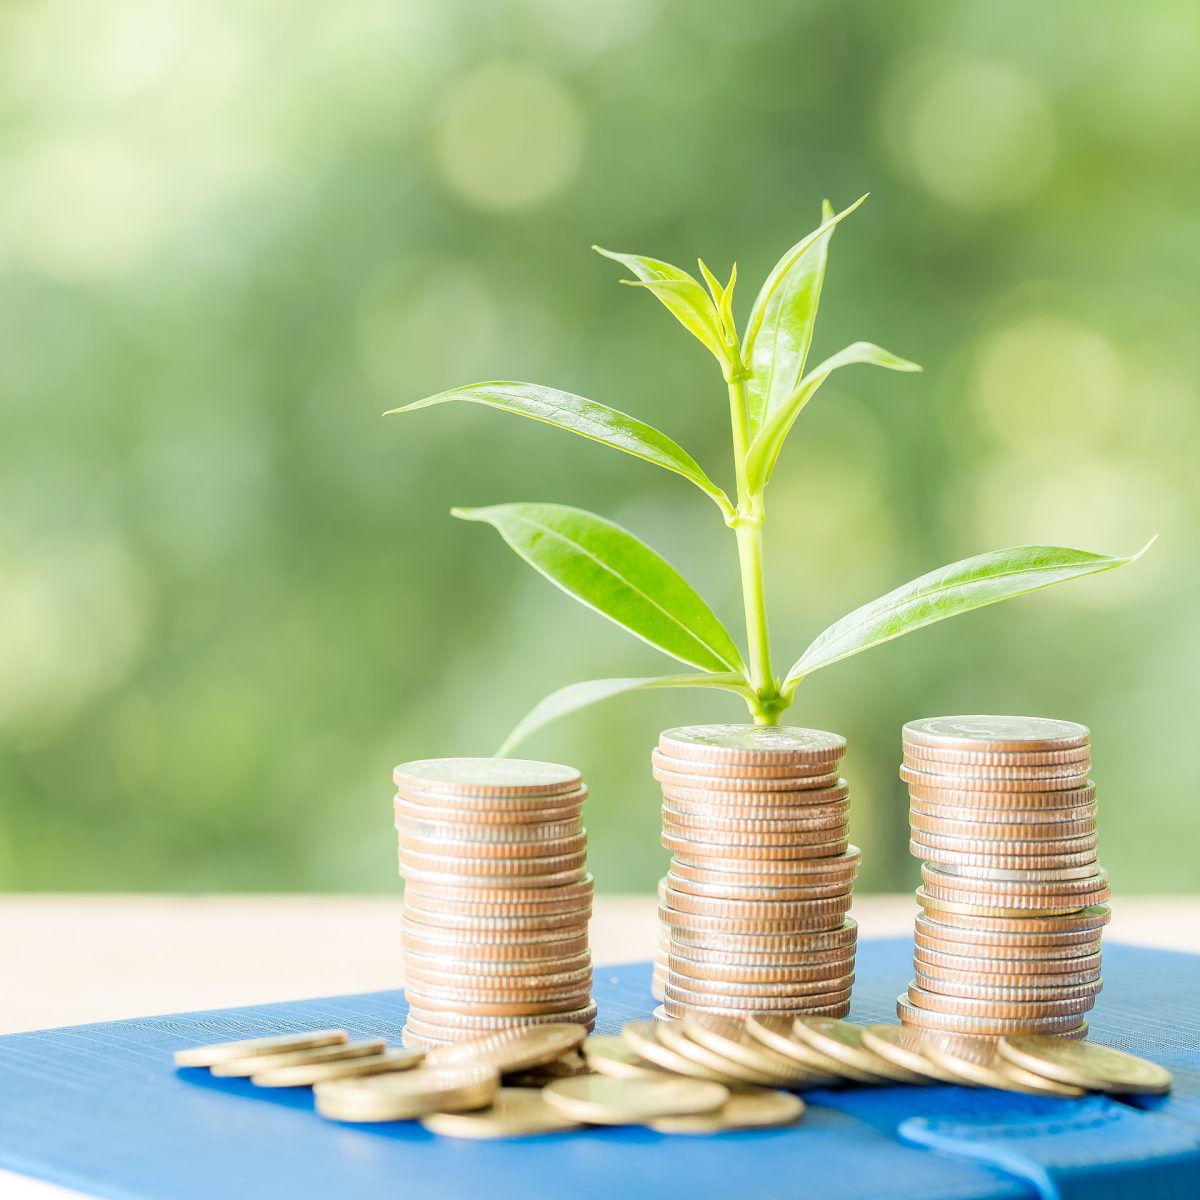 Quarta emissione del BTP Valore opportunita di investimento per i piccoli risparmiatori FE